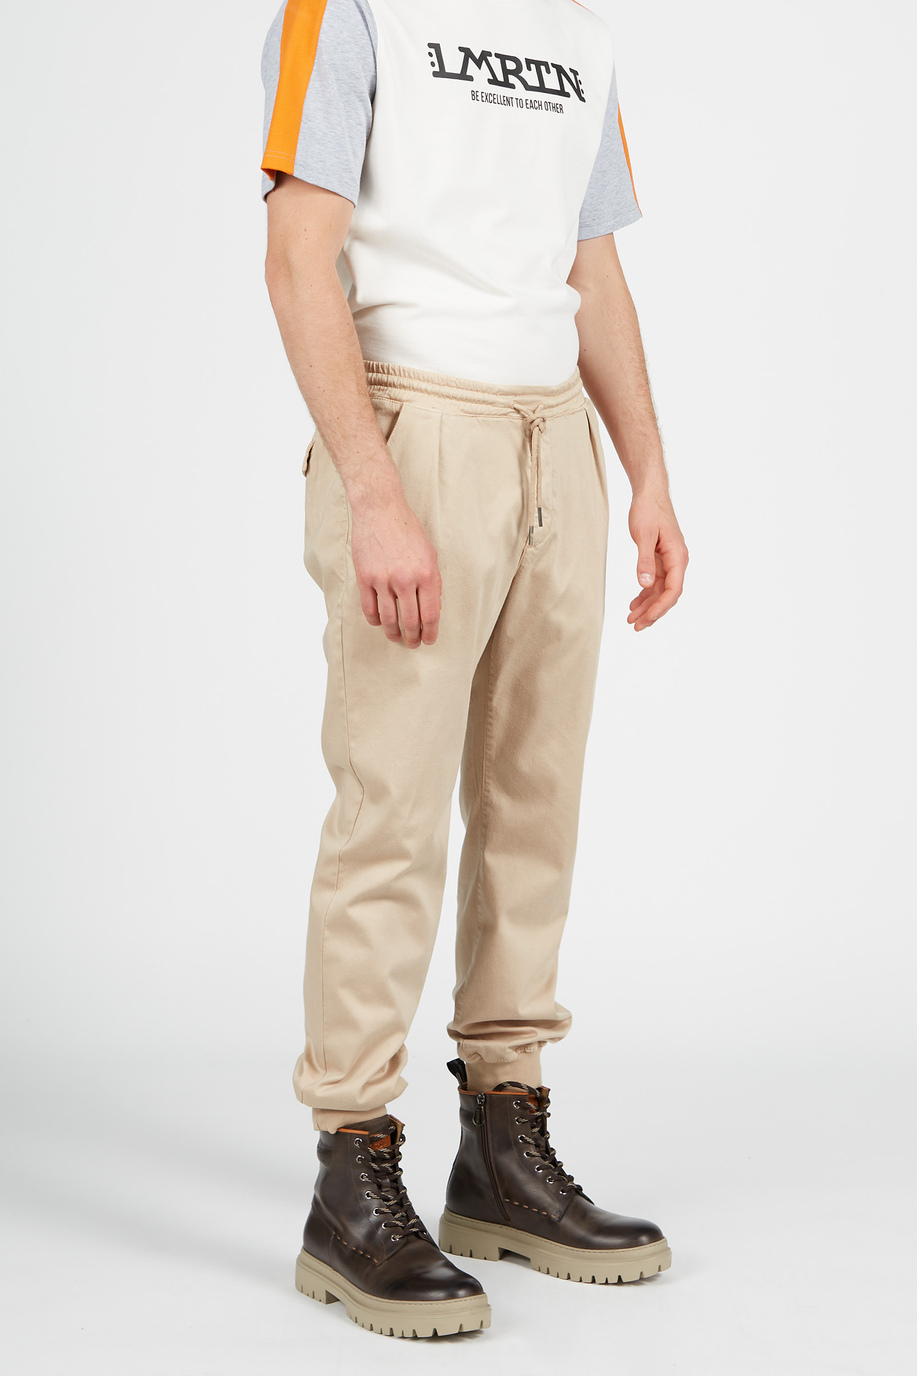 Cotton trousers - Trousers | La Martina - Official Online Shop